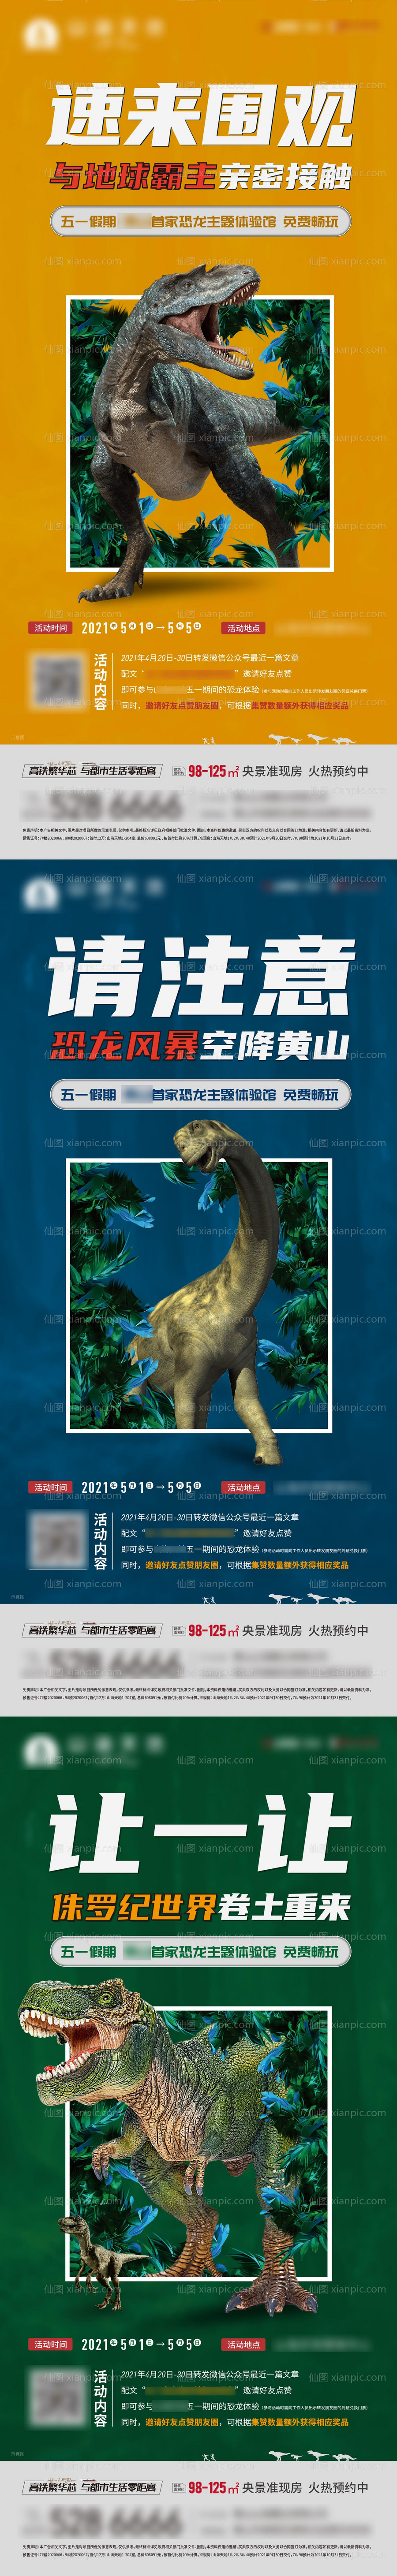 素材乐-侏罗纪恐龙活动前宣系列单图